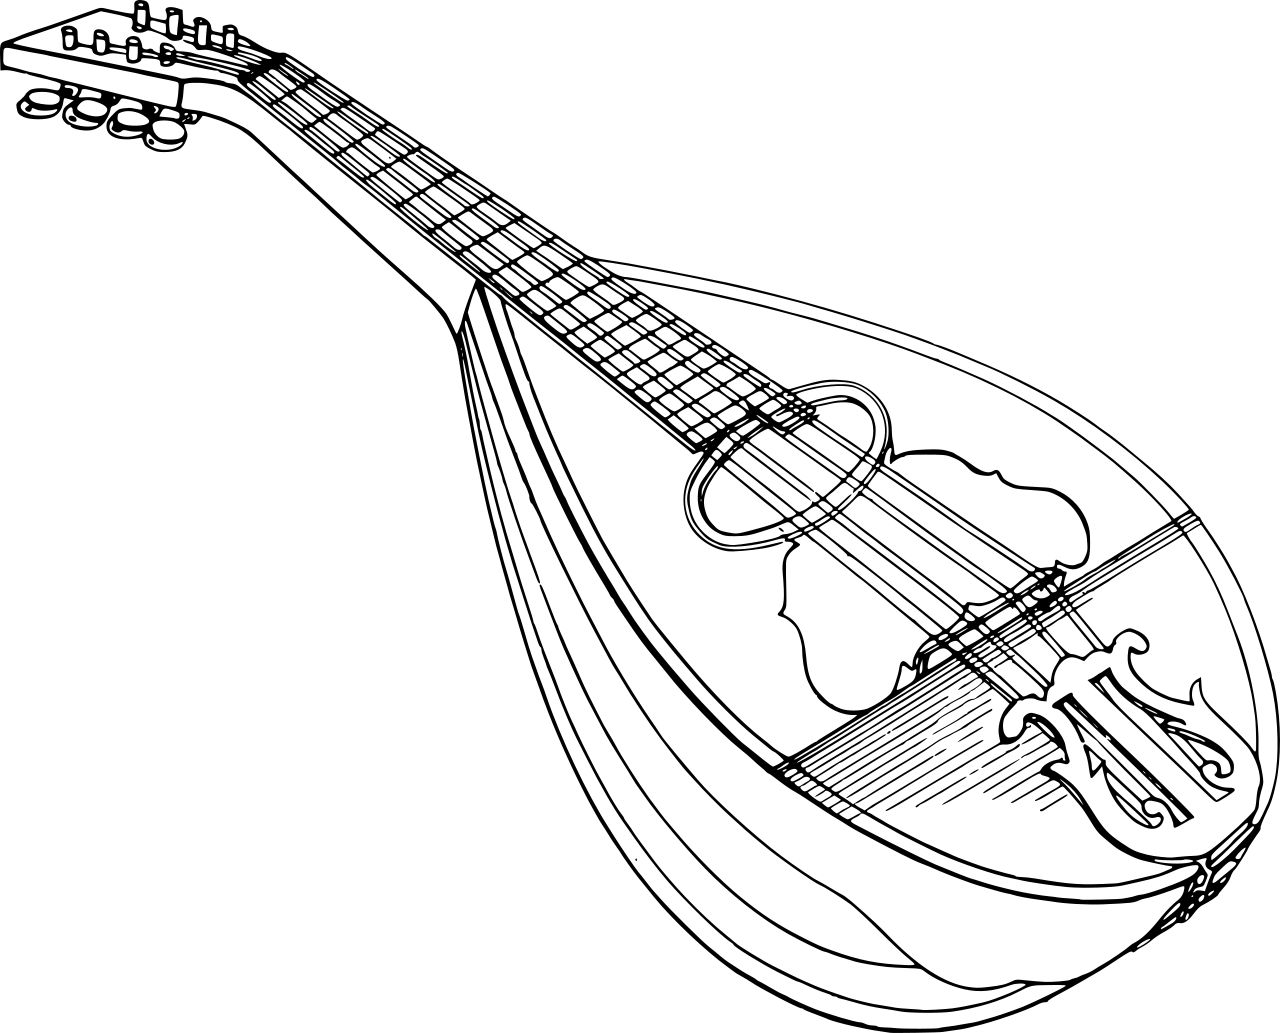 Omalovnka mandolna k vytisknut na A4